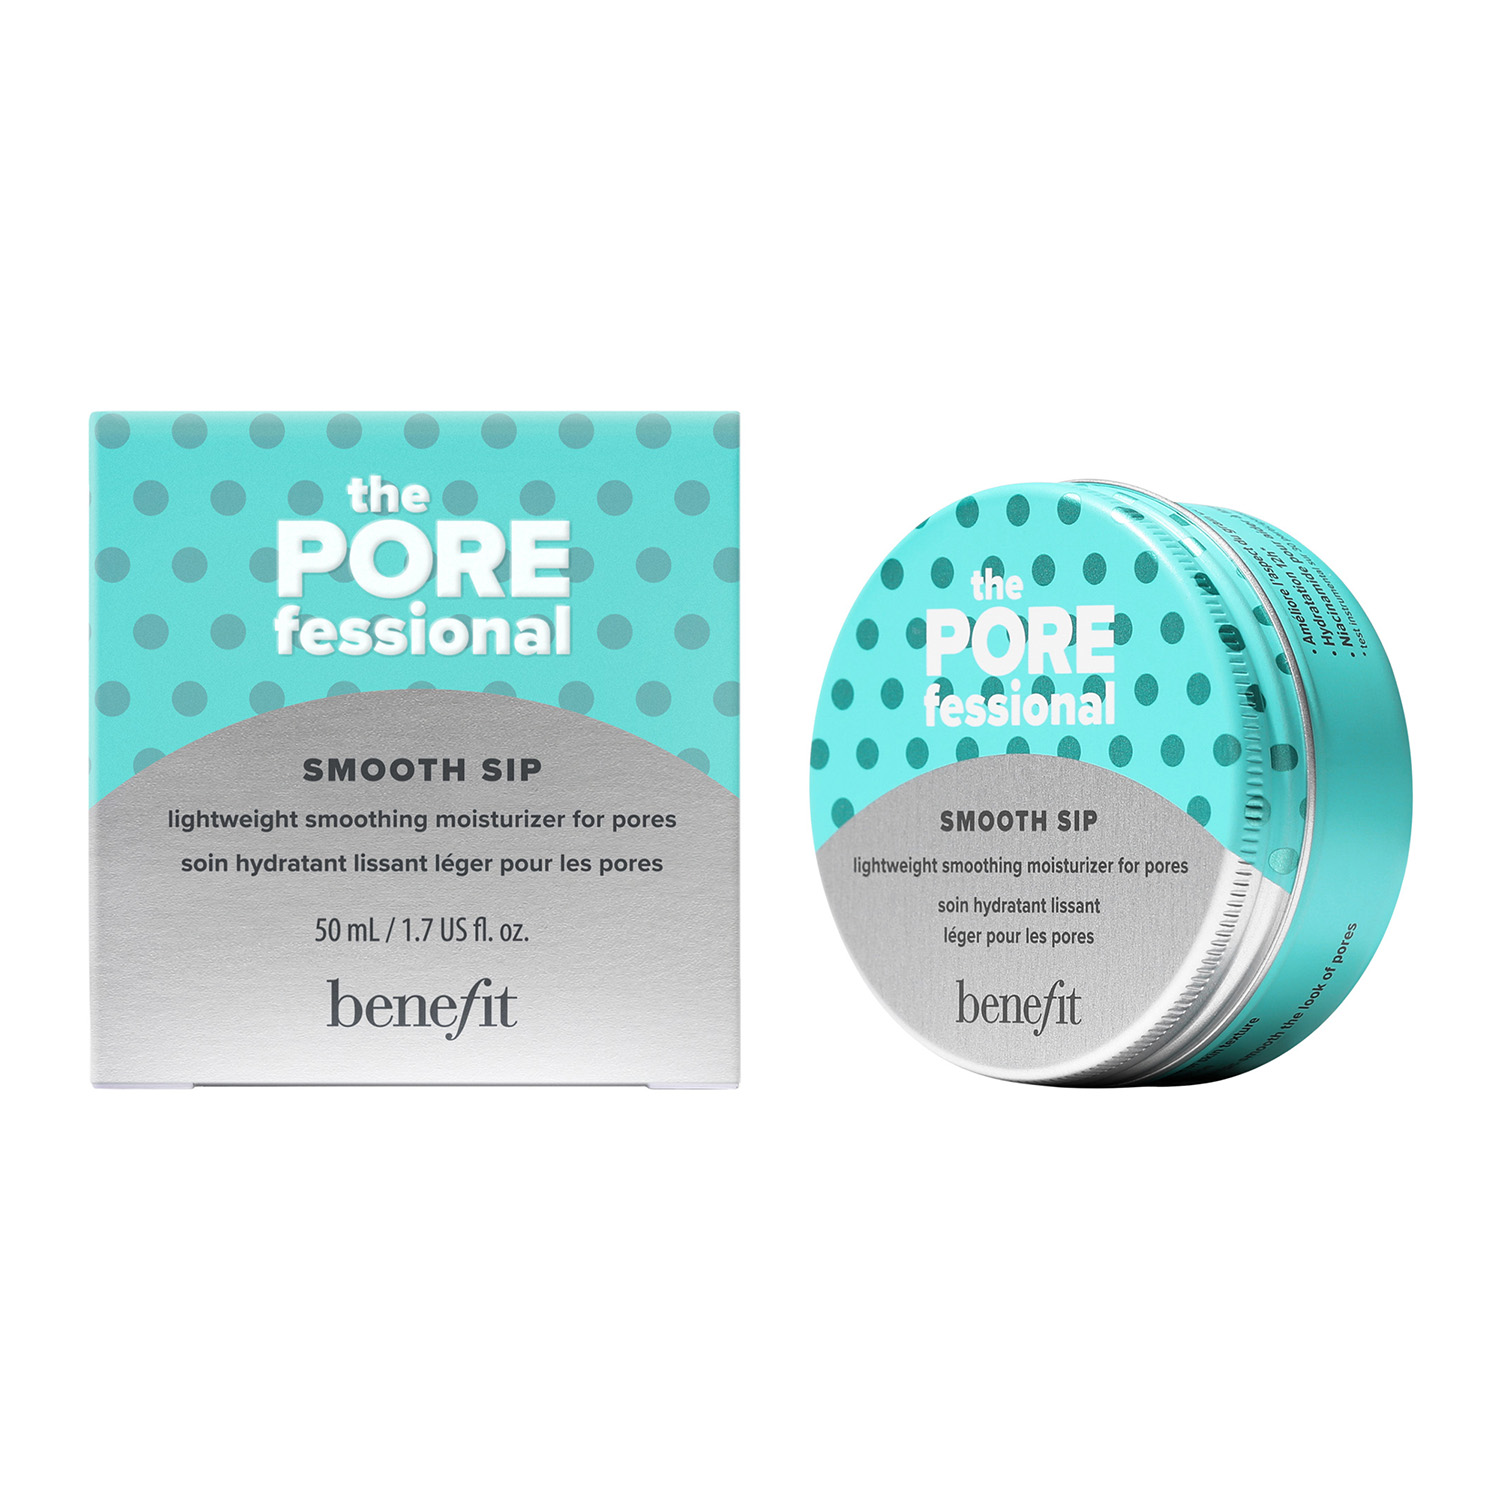 the porefessional smooth sip moisturizer (crema facial ligera)